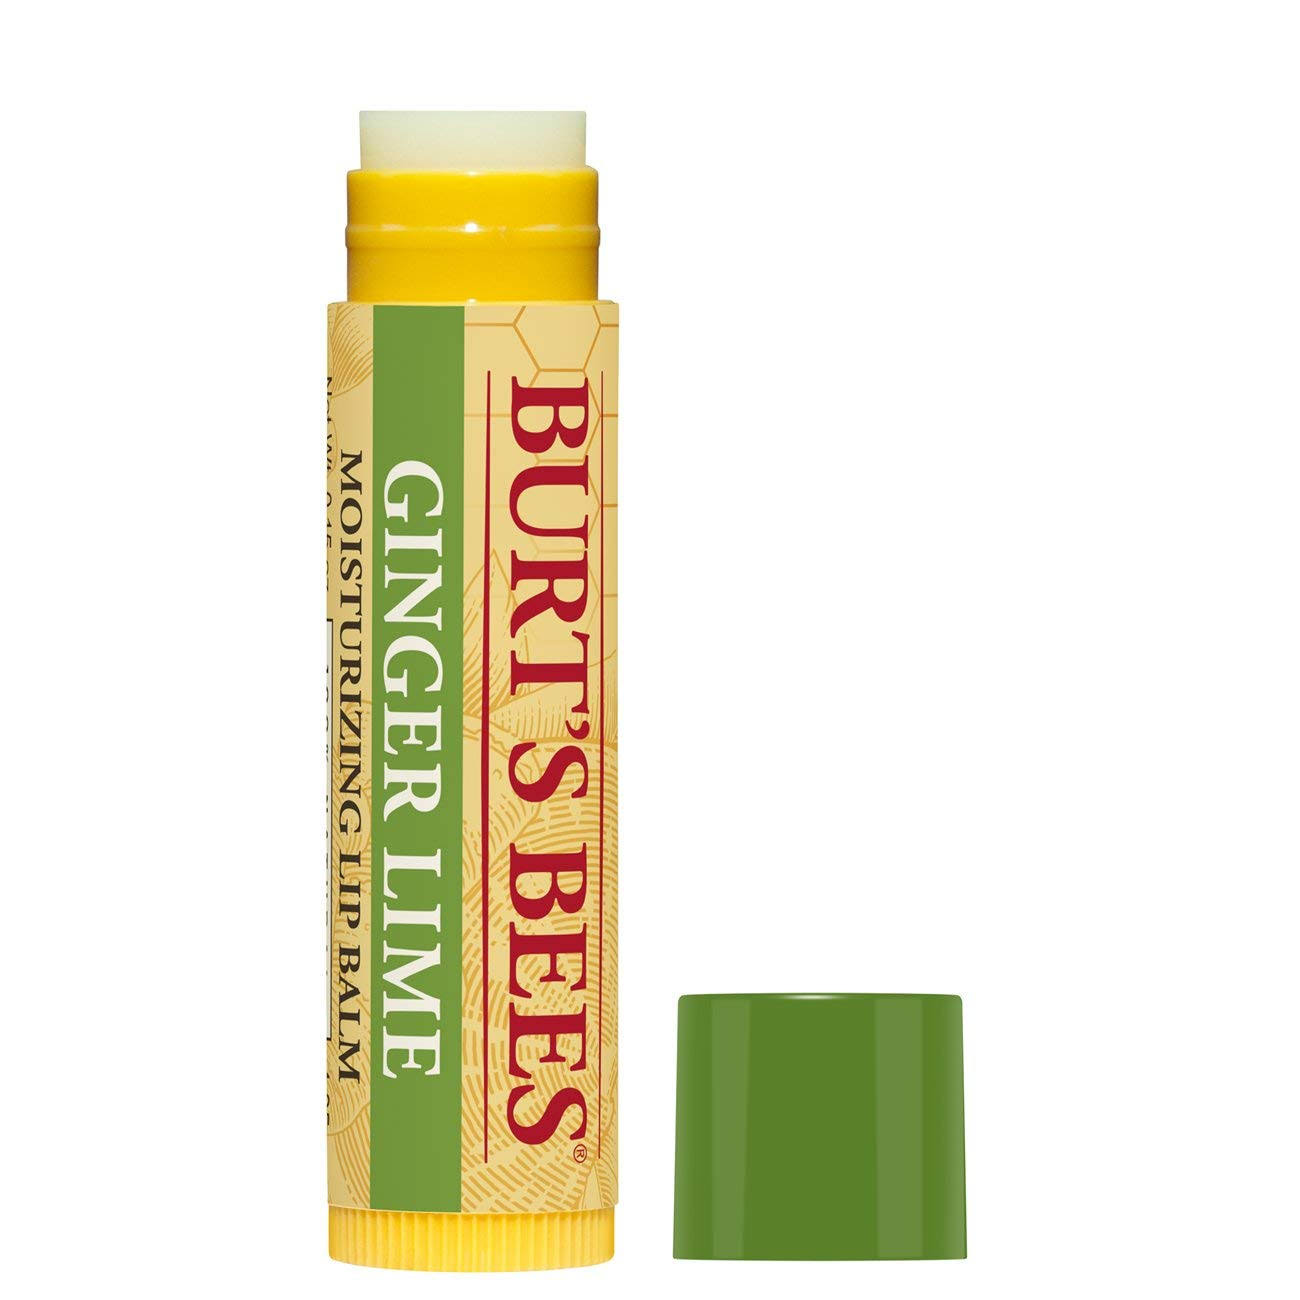 Burt's Bees 100% Natural Moisturizing Lip Balm, Ginger Lime - 1 Tube